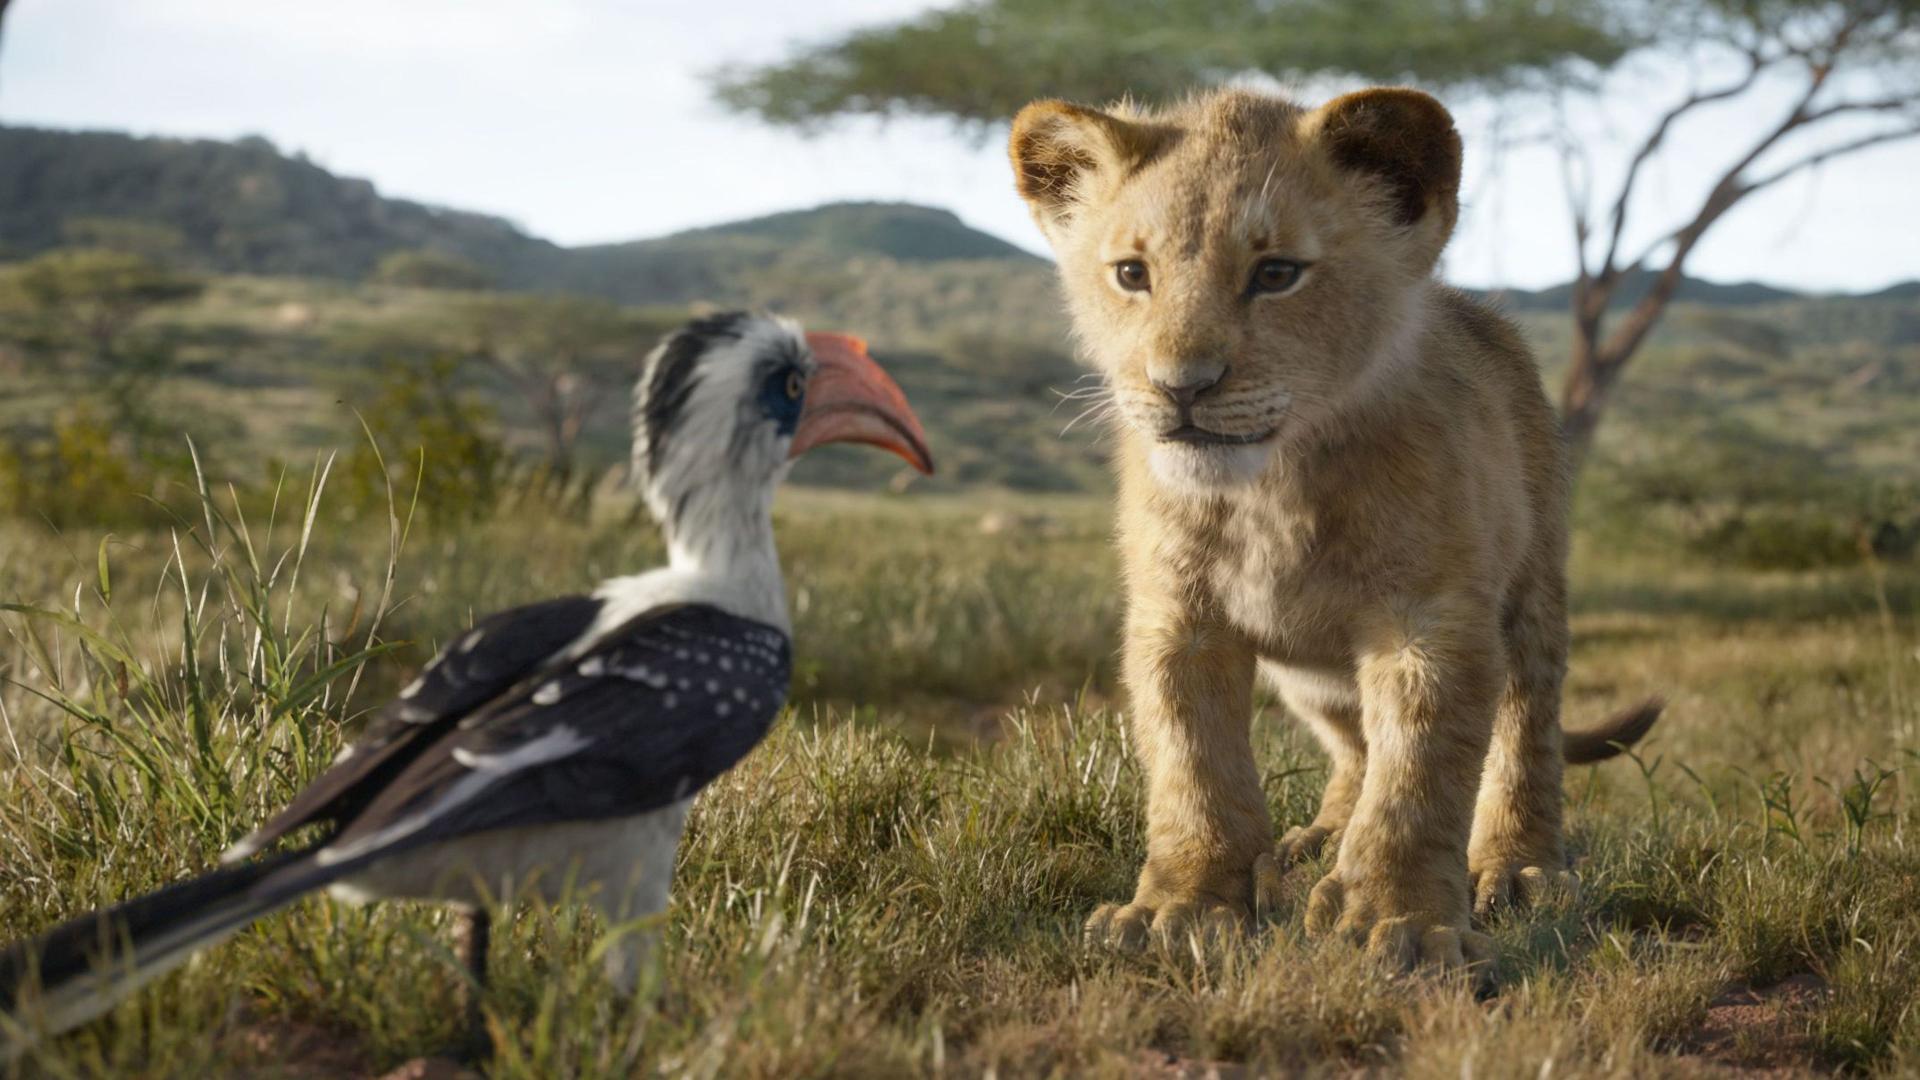 El rey león': Disney rechazó un final alternativo porque era horrible